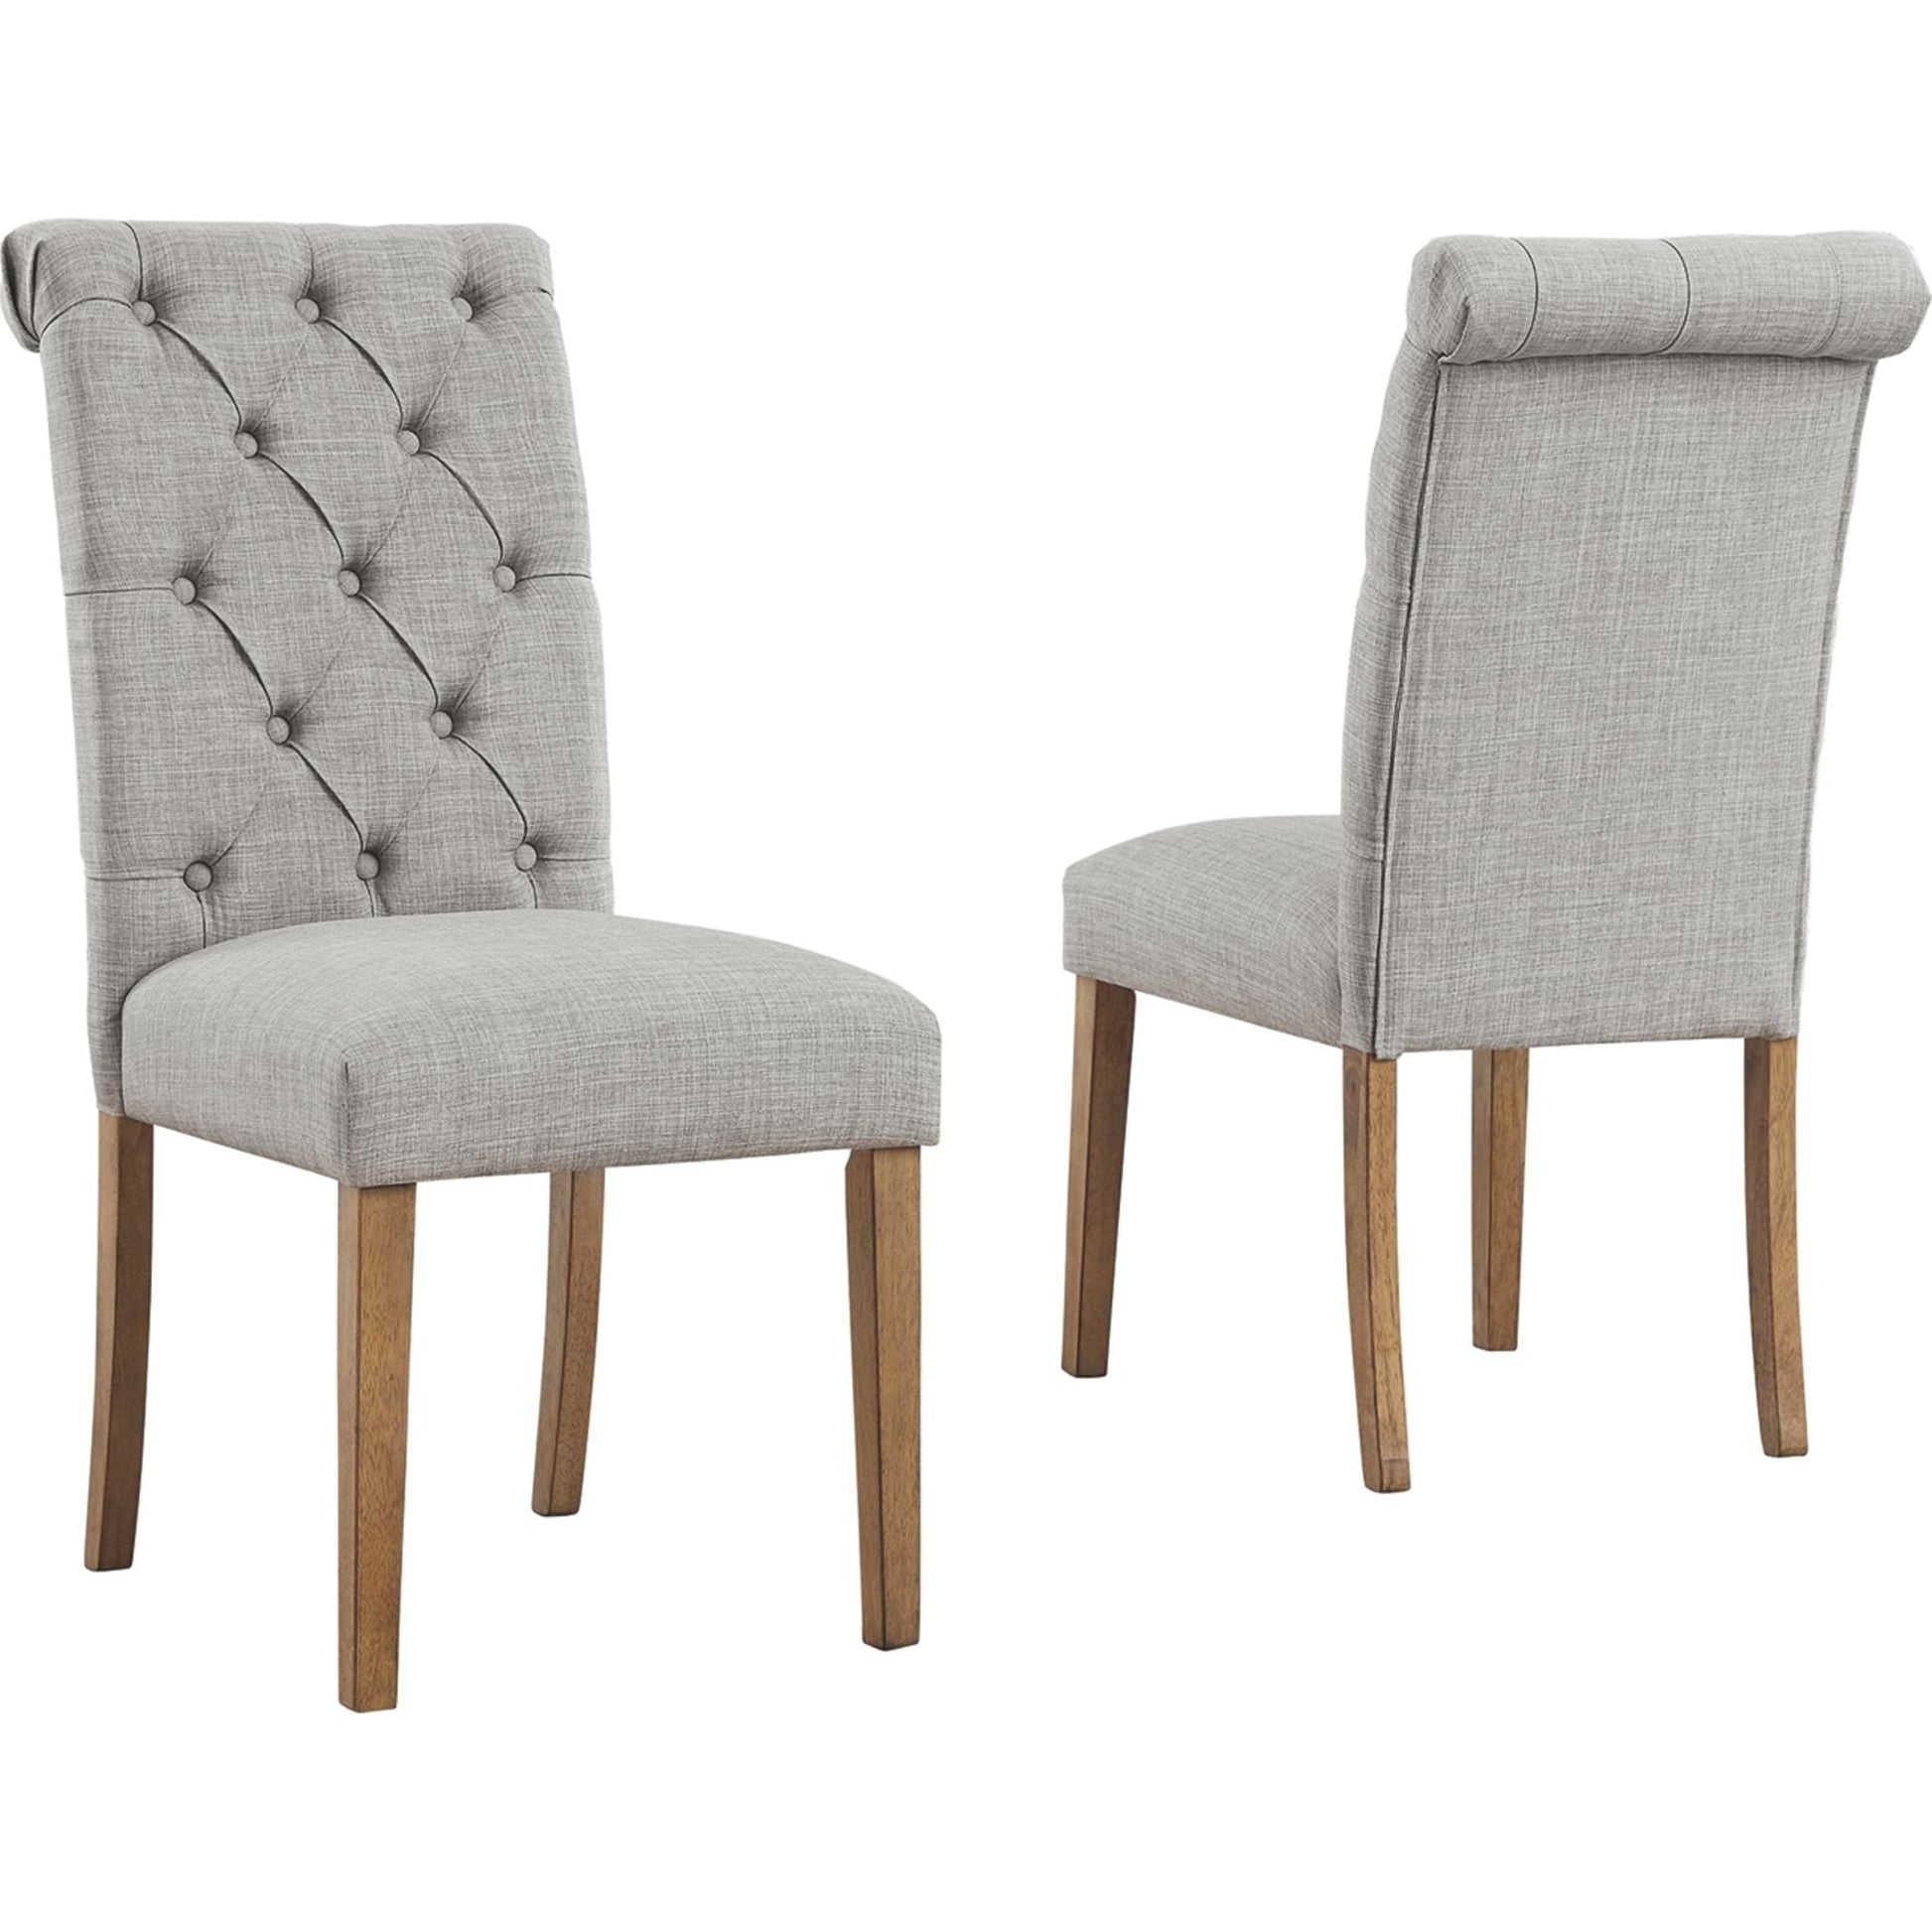 Harvina Upholstered Side Chair - Light Gray - (D324-02)